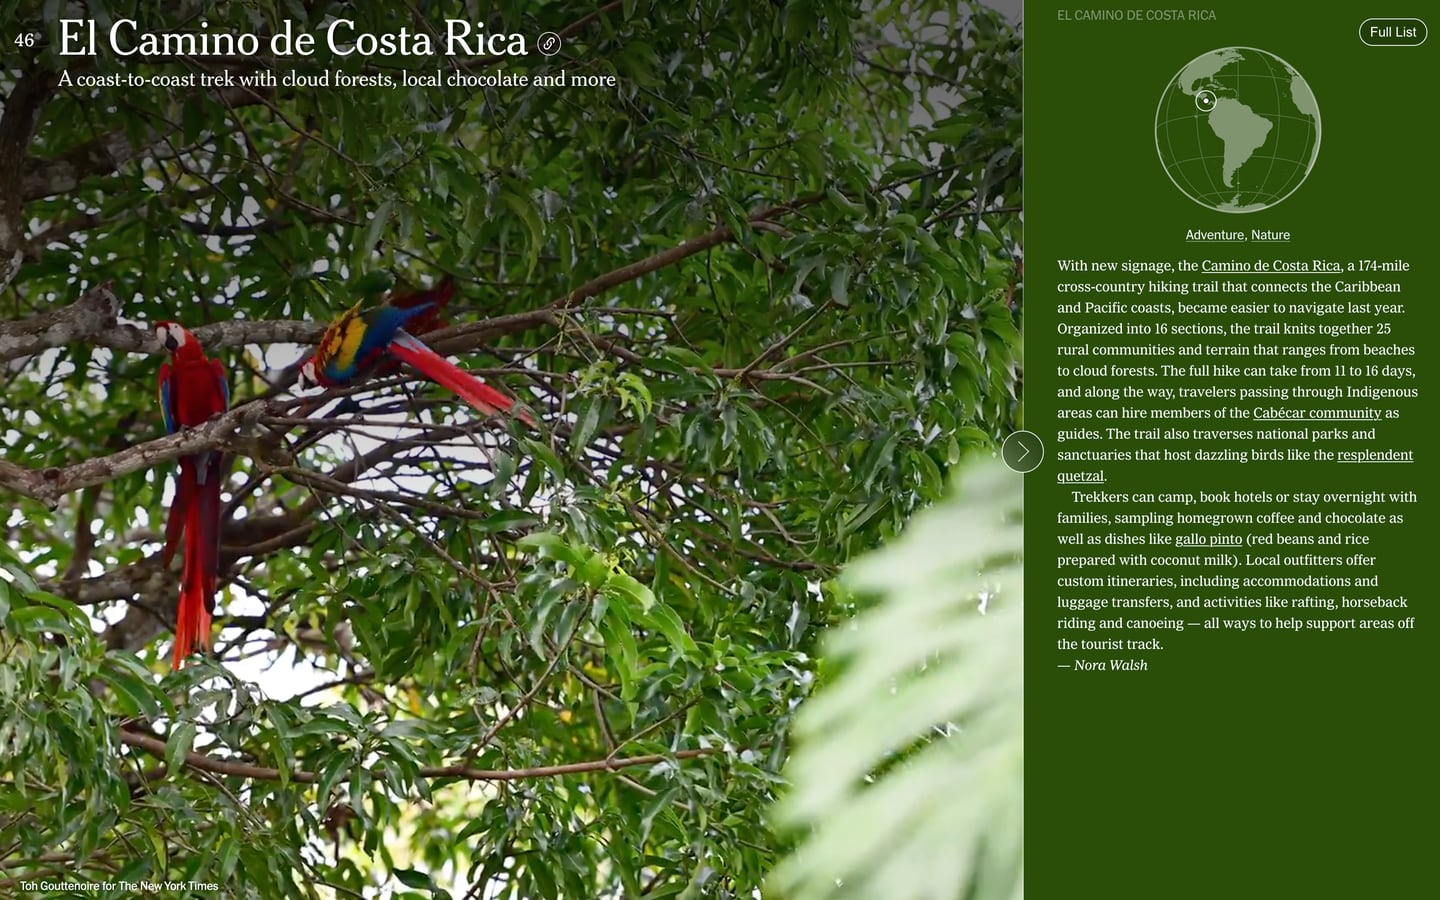 Esta es la mención de Costa Rica entre los 52 destinos propuestos por The New York Times pra el 2024. El Camino de Costa Rica aparece en el puesto 46 en el listado. Fotografía: Th New York Times